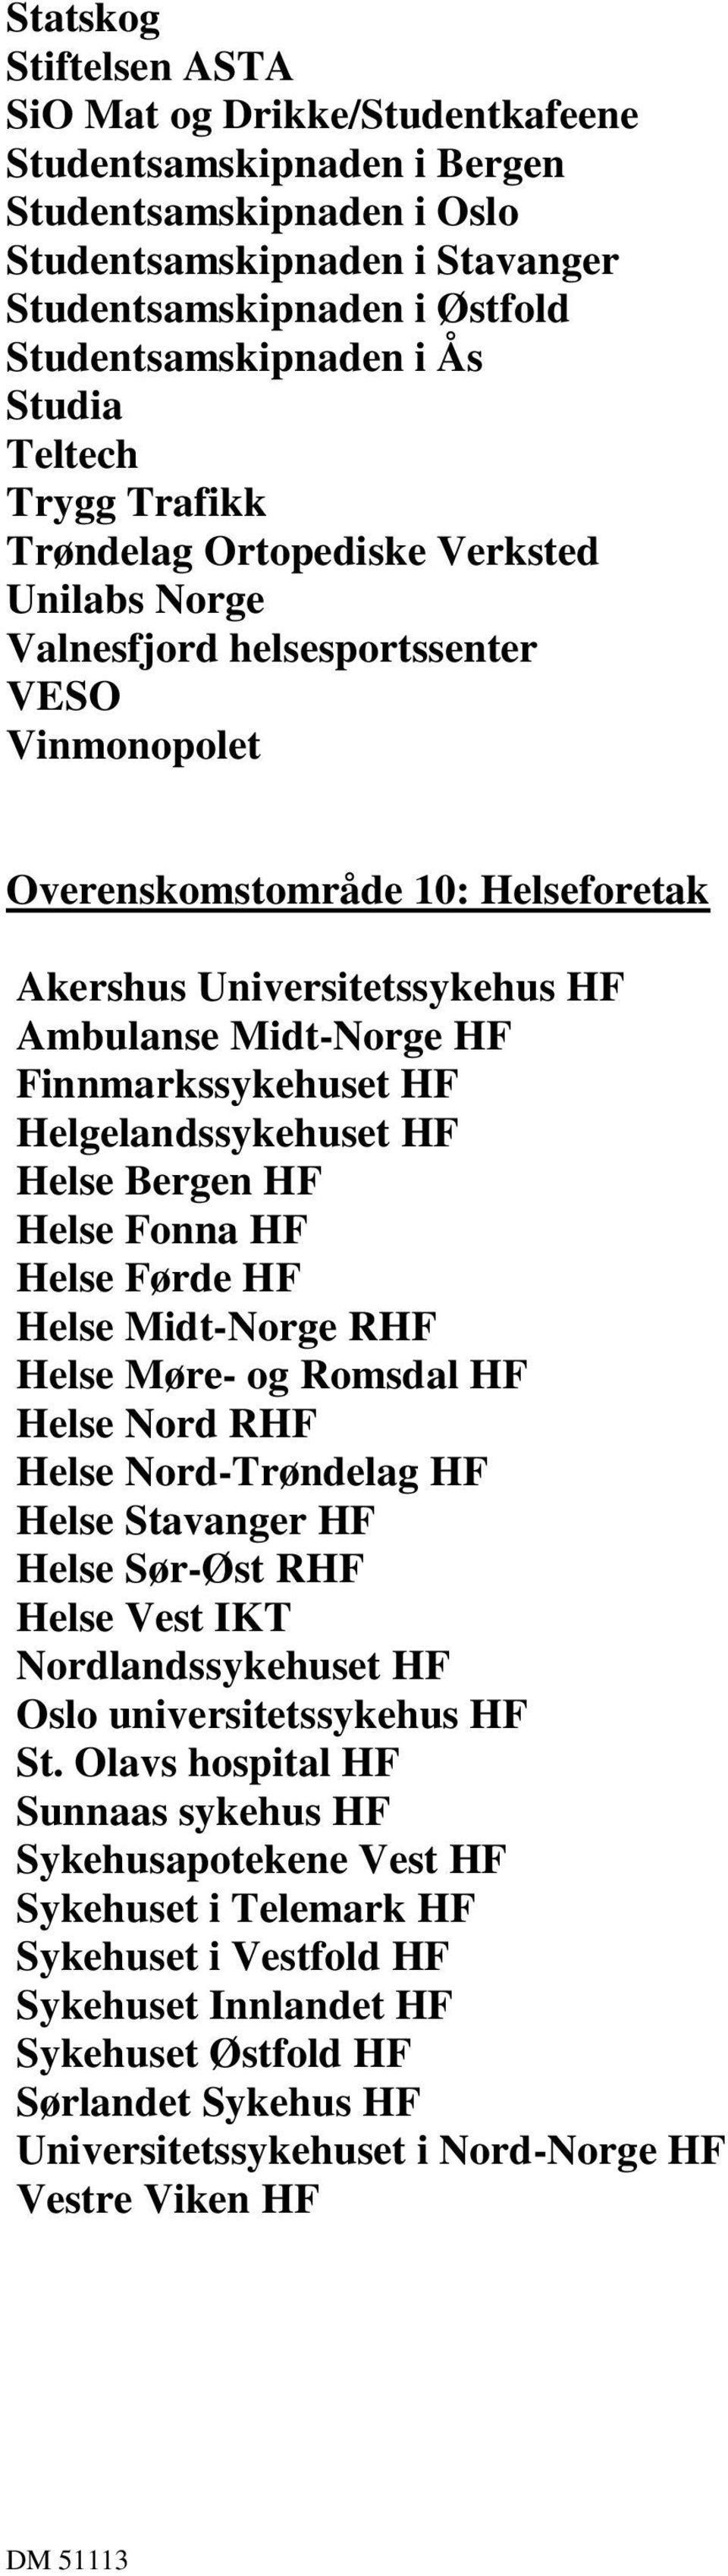 Ambulanse Midt-Norge HF Finnmarkssykehuset HF Helgelandssykehuset HF Helse Bergen HF Helse Fonna HF Helse Førde HF Helse Midt-Norge RHF Helse Møre- og Romsdal HF Helse Nord RHF Helse Nord-Trøndelag